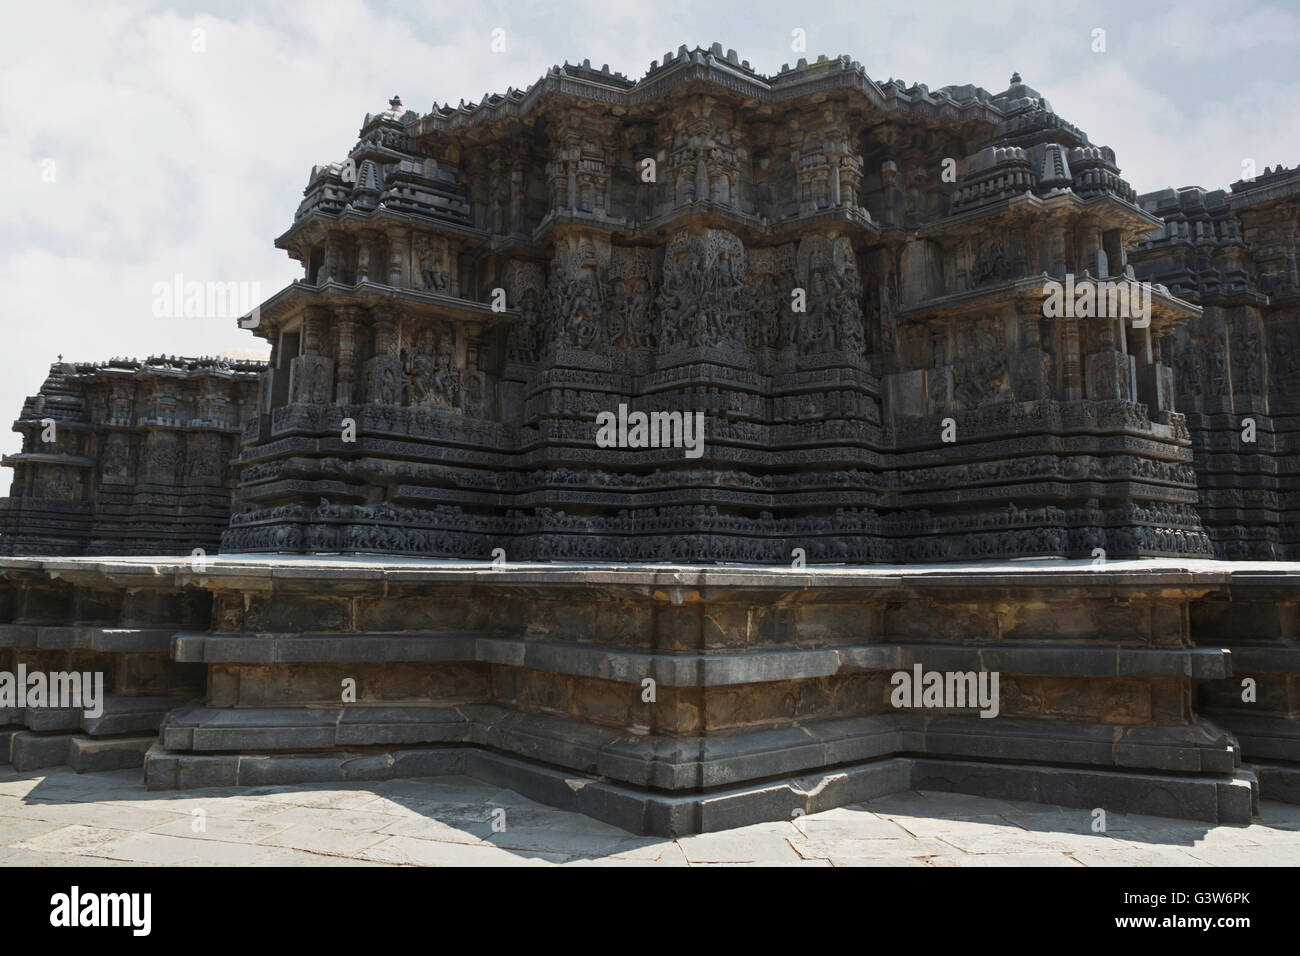 Afficher sous forme de culte stellaire de mur extérieur au temple hoysaleshwara, halebid, Karnataka, Inde. vue depuis le sud-ouest. Banque D'Images